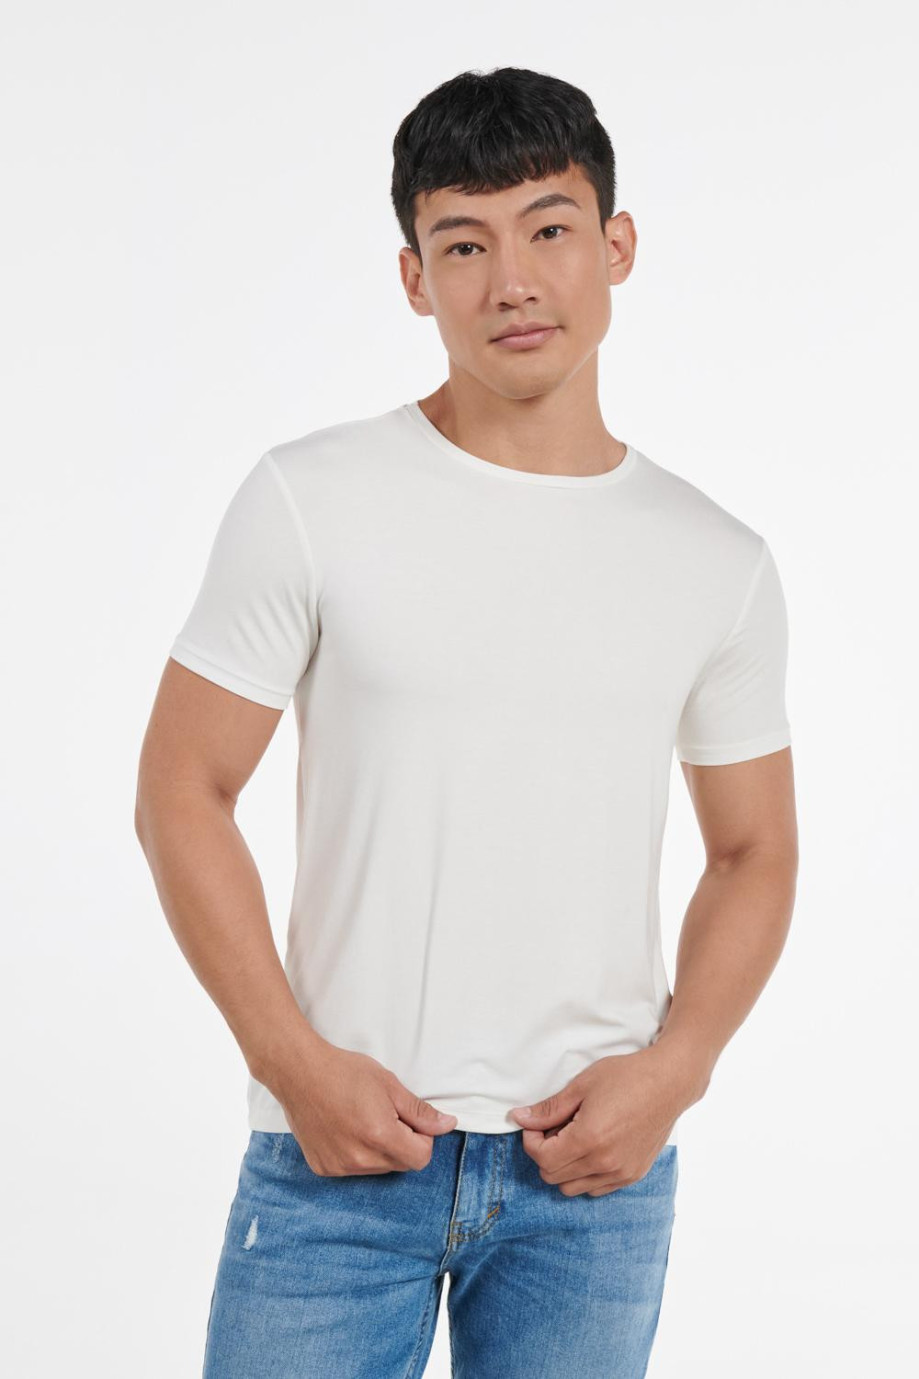 Camiseta manga corta unicolor con sesgo en cuello redondo